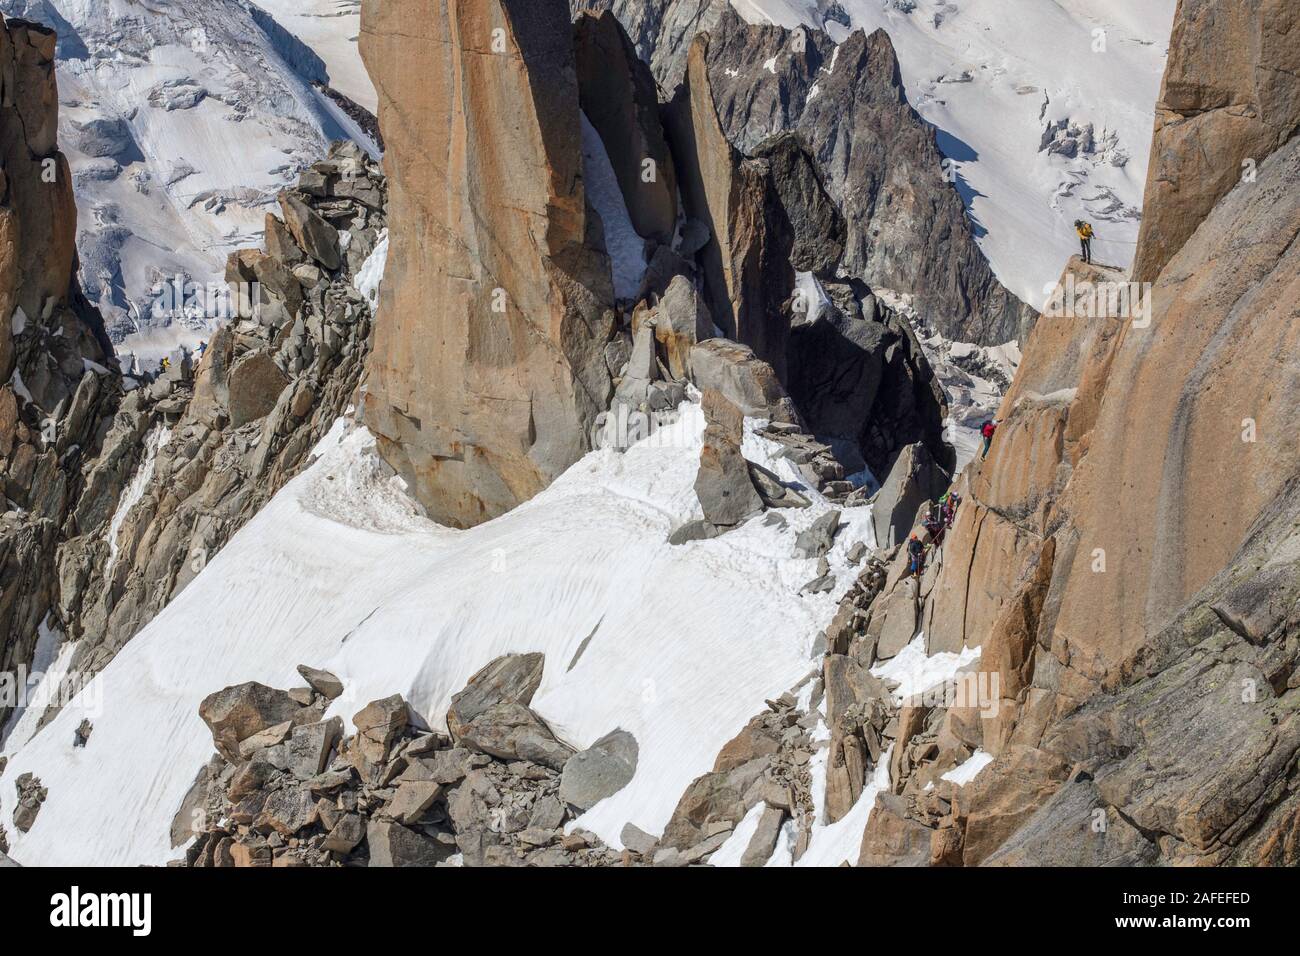 Les alpinistes de l'escalade, Mont Blanc. Aiguille du Midi. Chamonix. France Banque D'Images